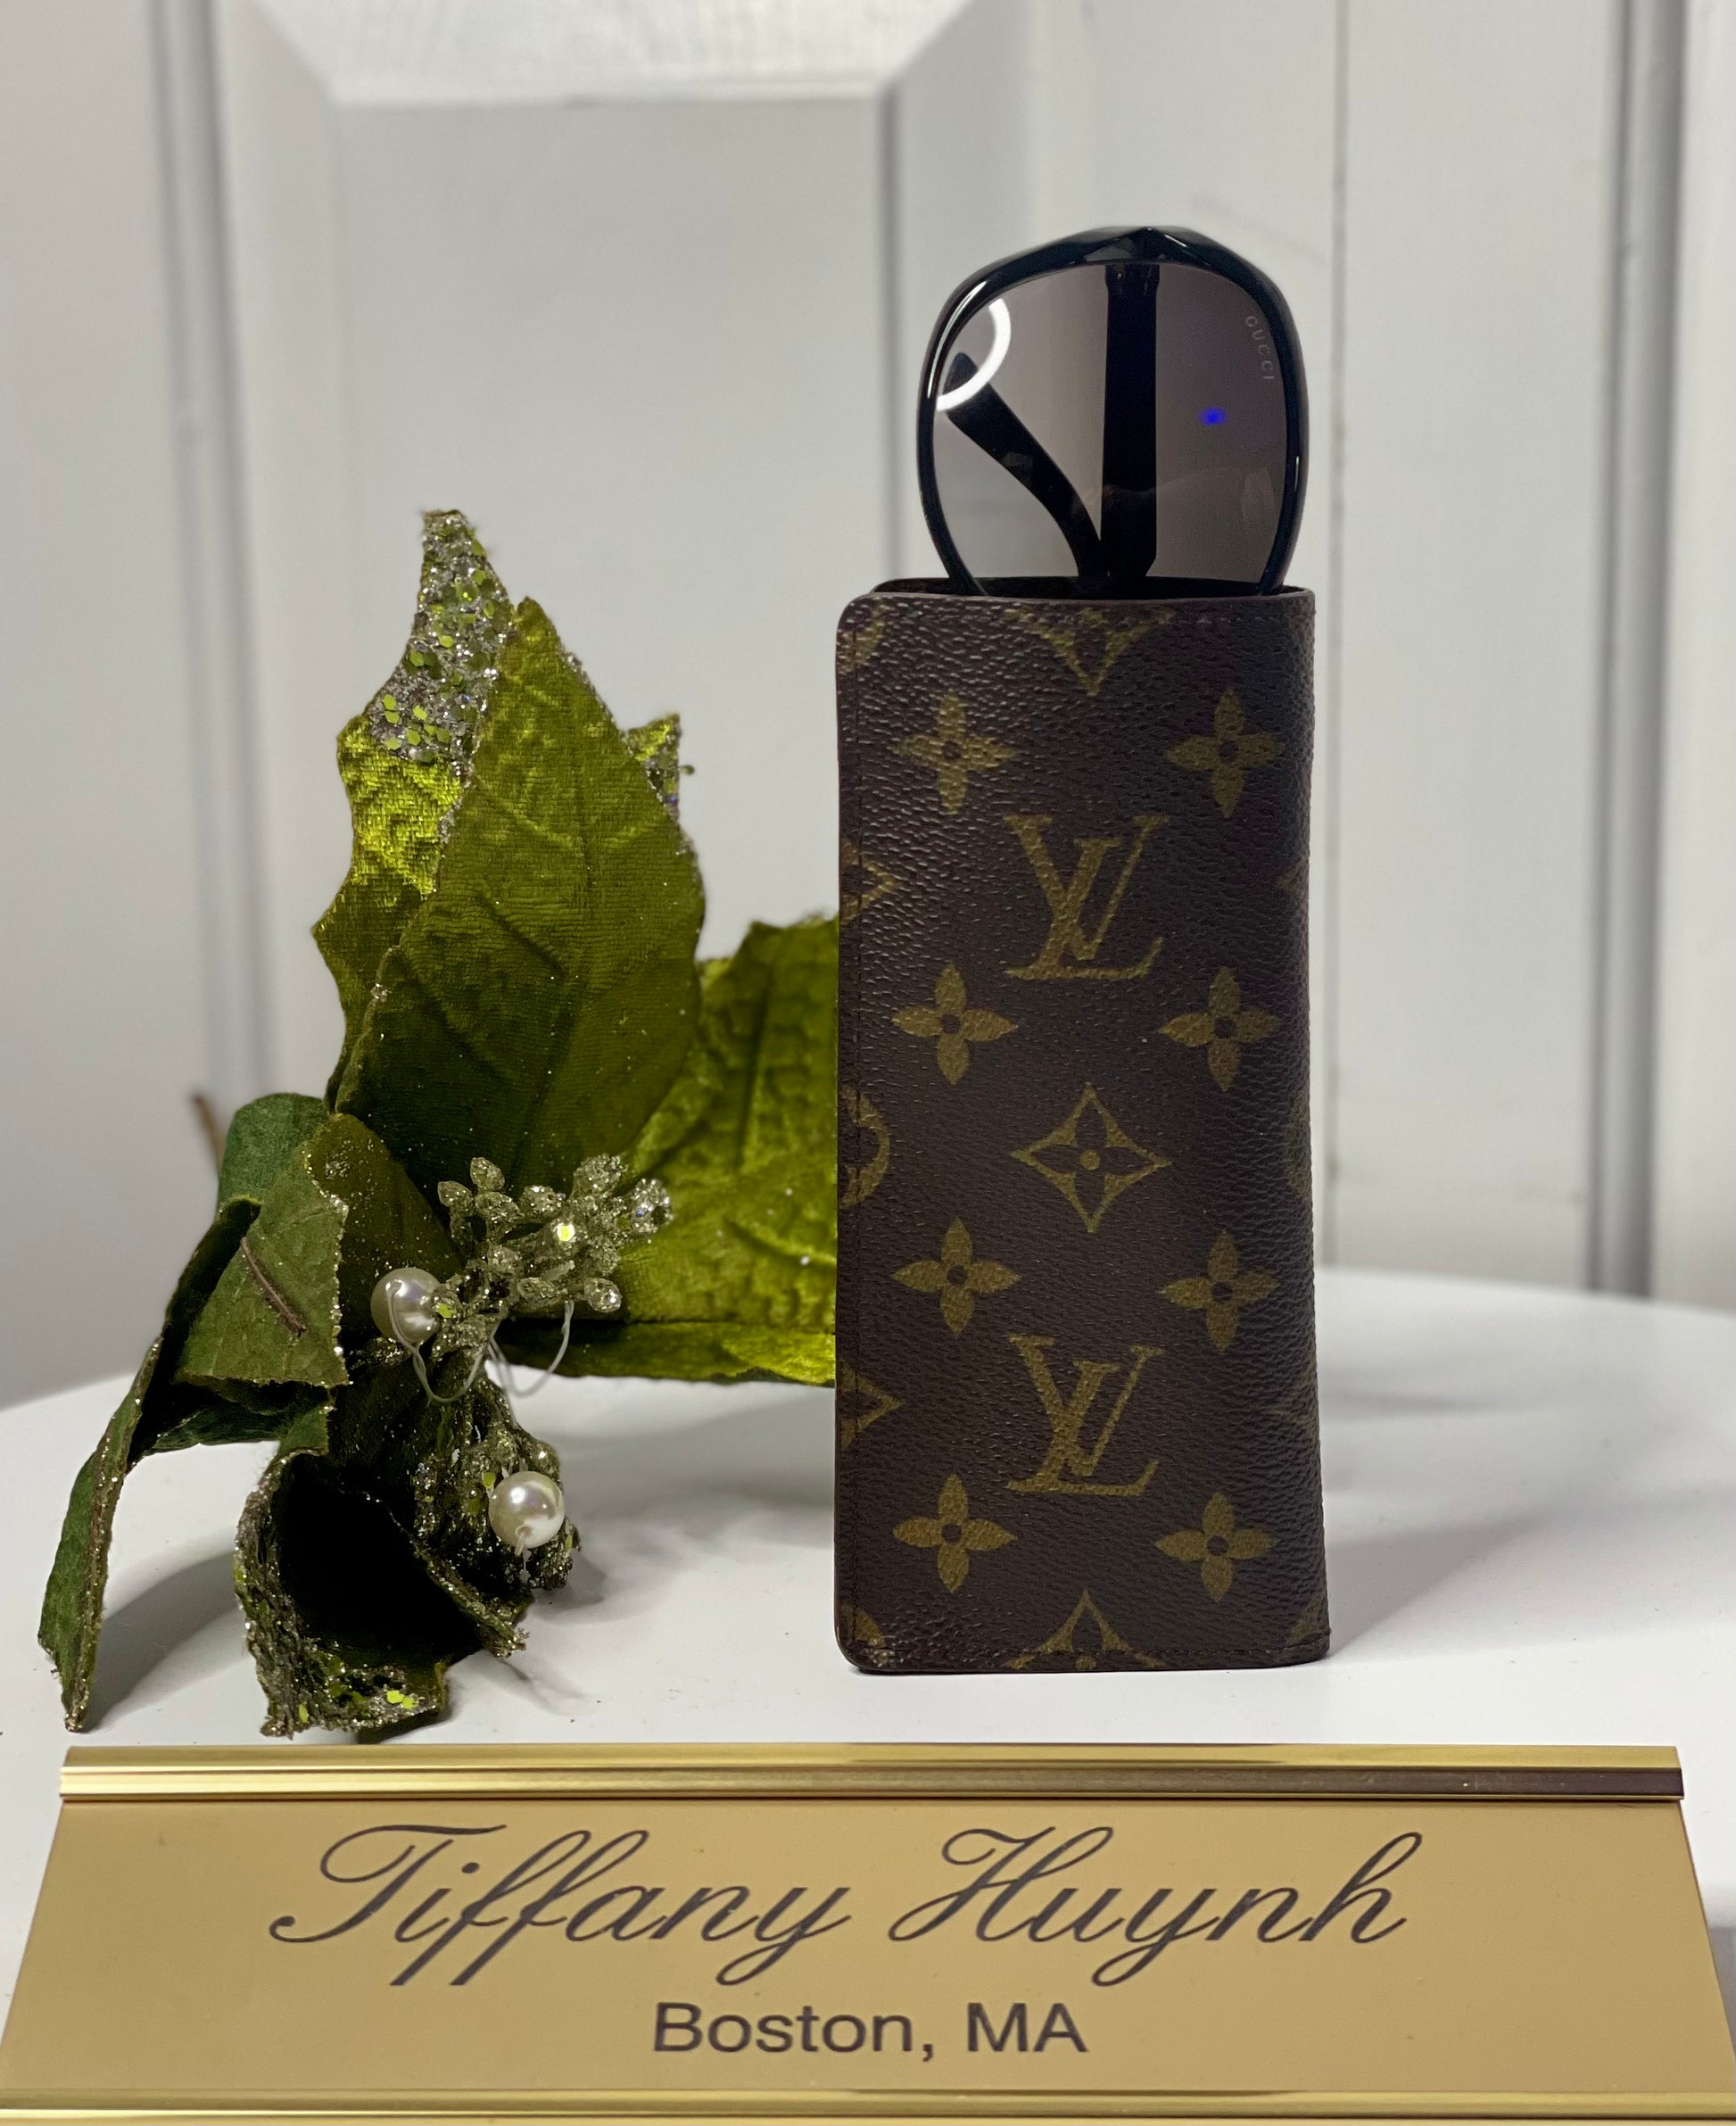 Louis Vuitton Glasses Case Bag